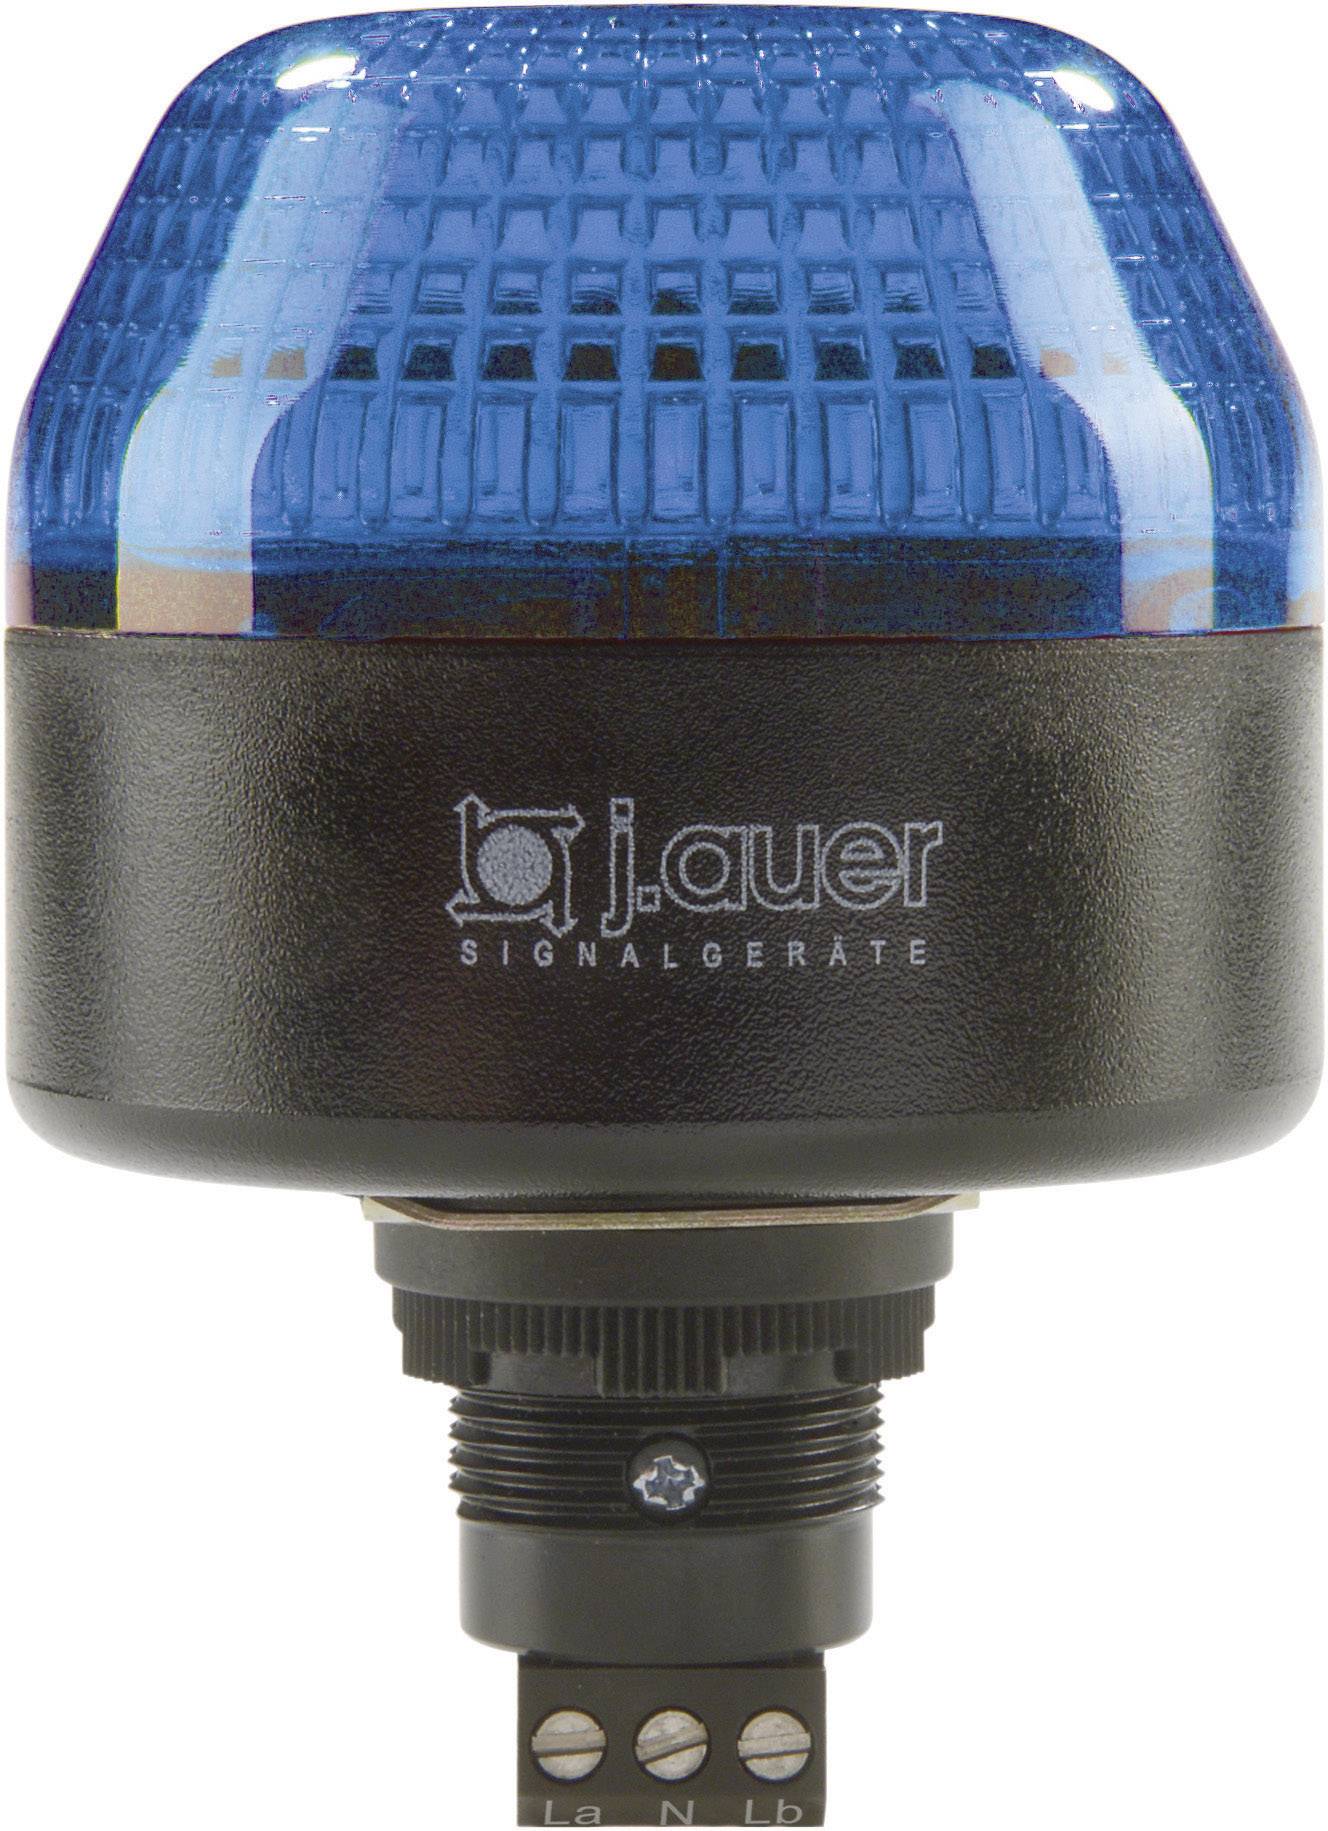 AUER SIGNAL Signalleuchte LED Auer Signalgeräte IBL Blau Dauerlicht, Blinklicht 24 V/DC, 24 V/AC